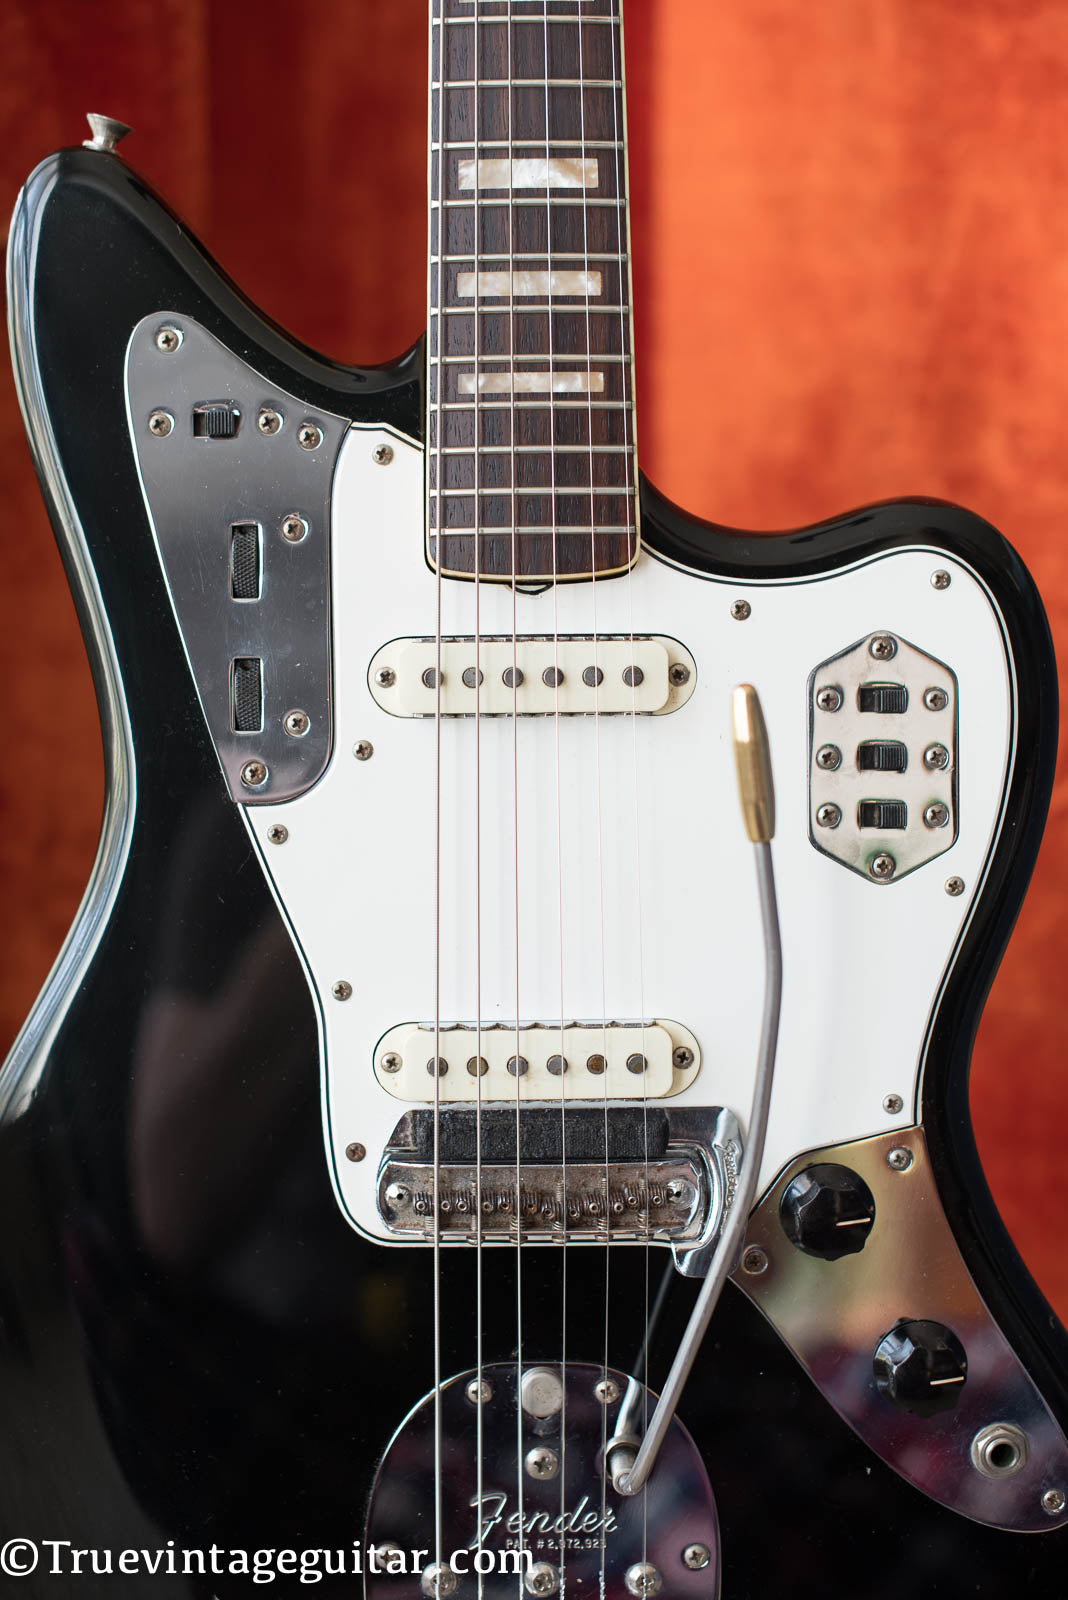 Vintage 1966 Fender Jaguar electric guitar custom color Black matching headstock